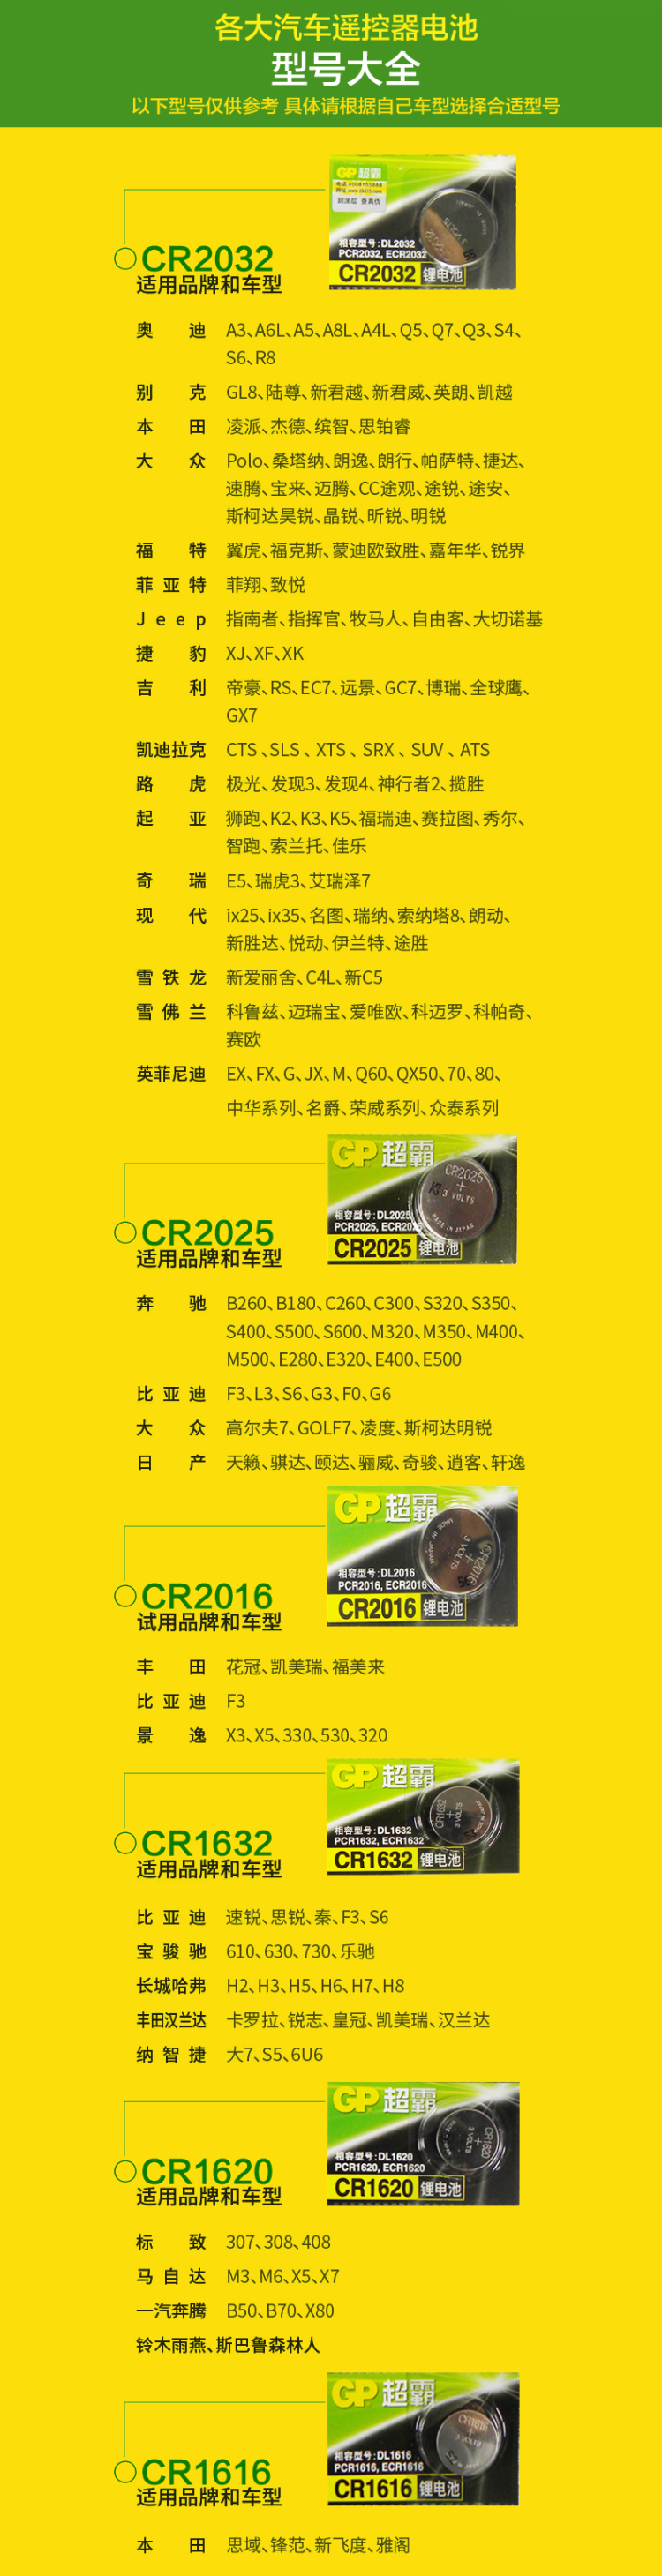 GP超霸3V纽扣电池CR1220 日本原装进口钮扣锂电子电池 5粒/卡装